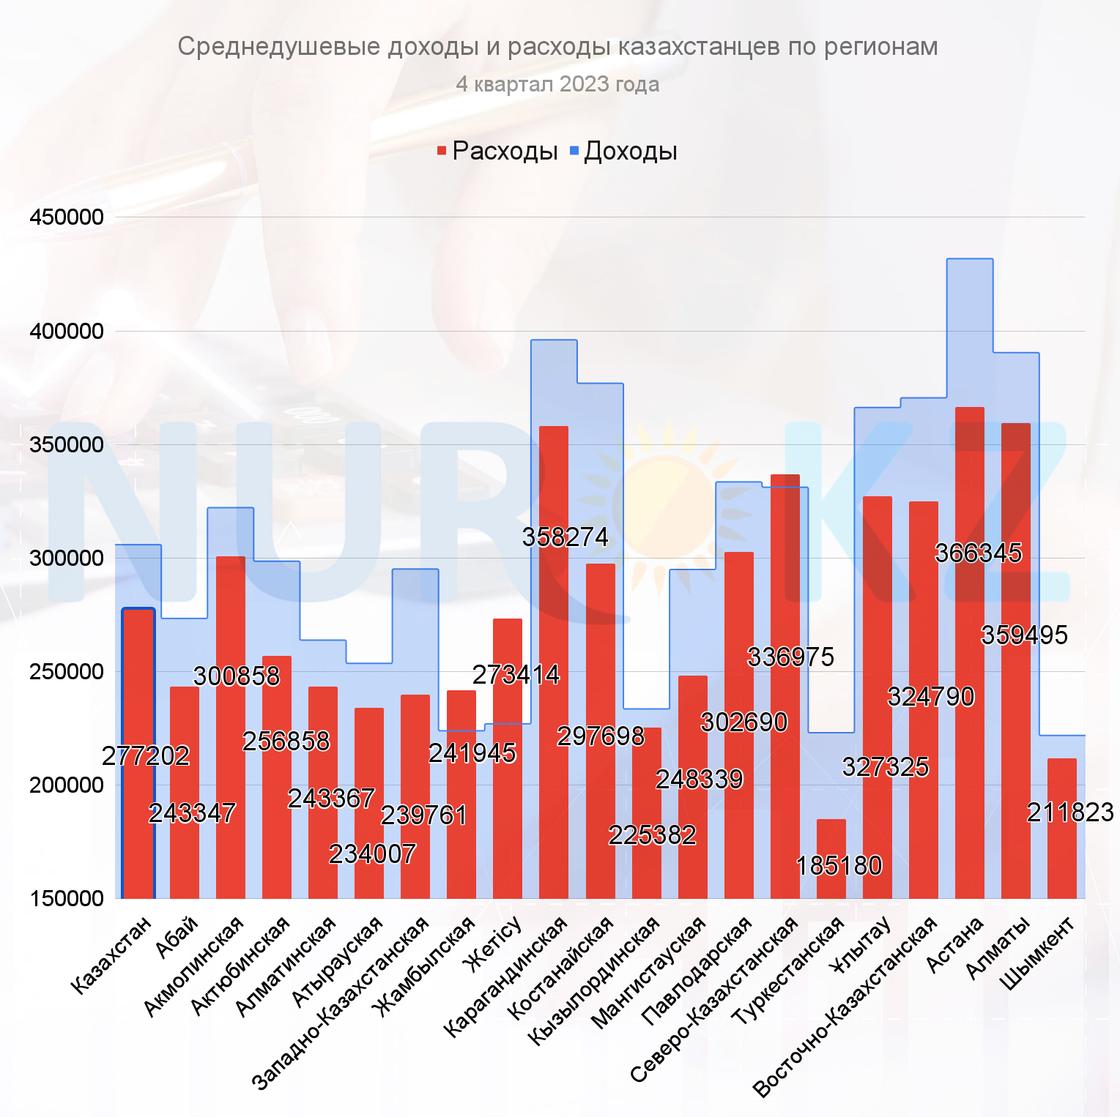 Доходы и расходы казахстанцев в 4 квартале 2023 года по регионам